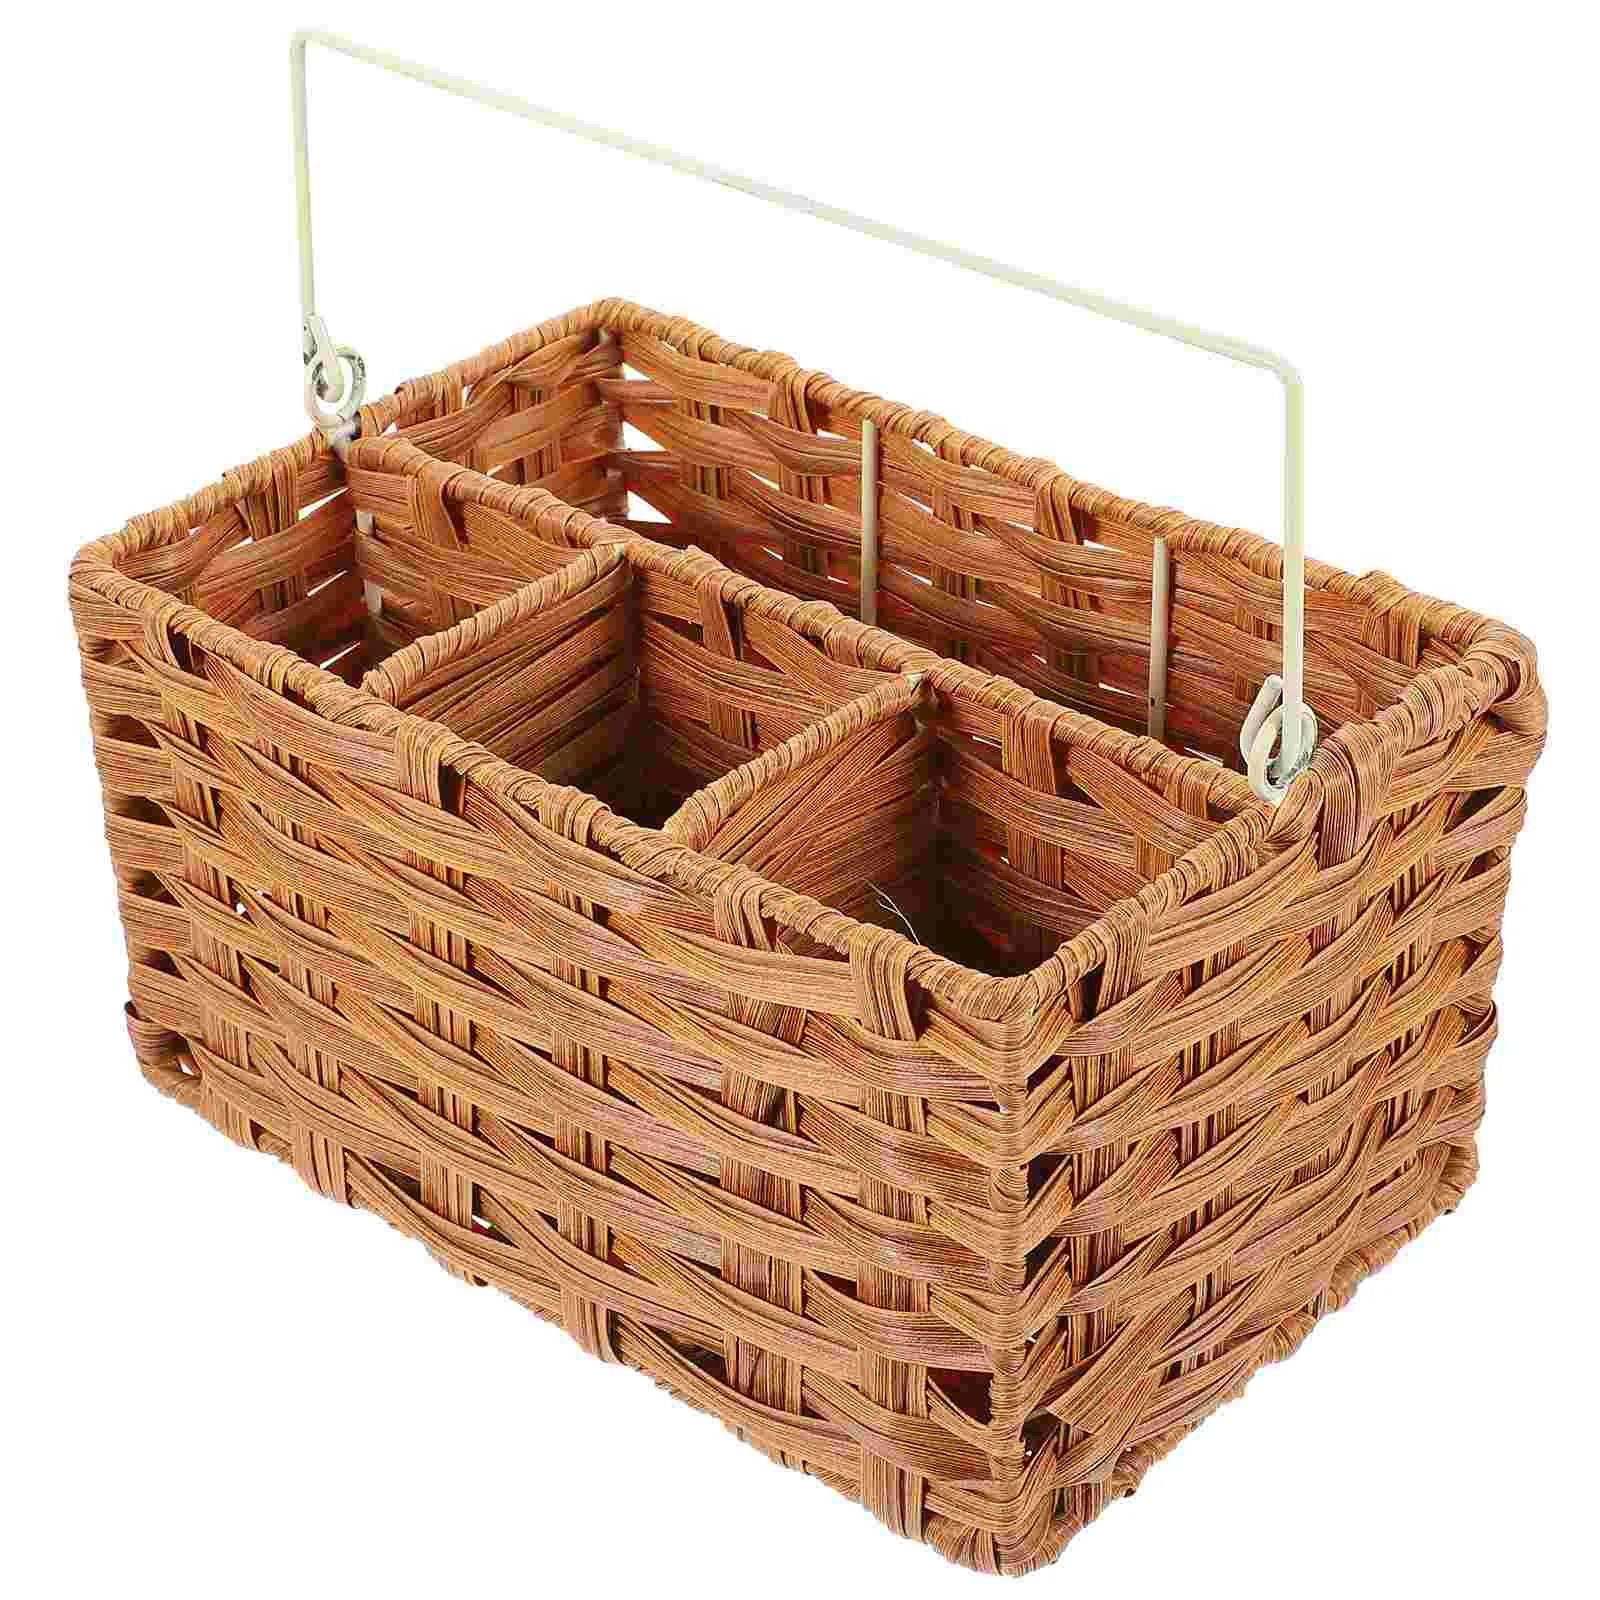 

Cutlery Storage Basket Utensil Organizer Snack Drawer Home Holder Kitchen Drawers Stationery Wooden Flatware